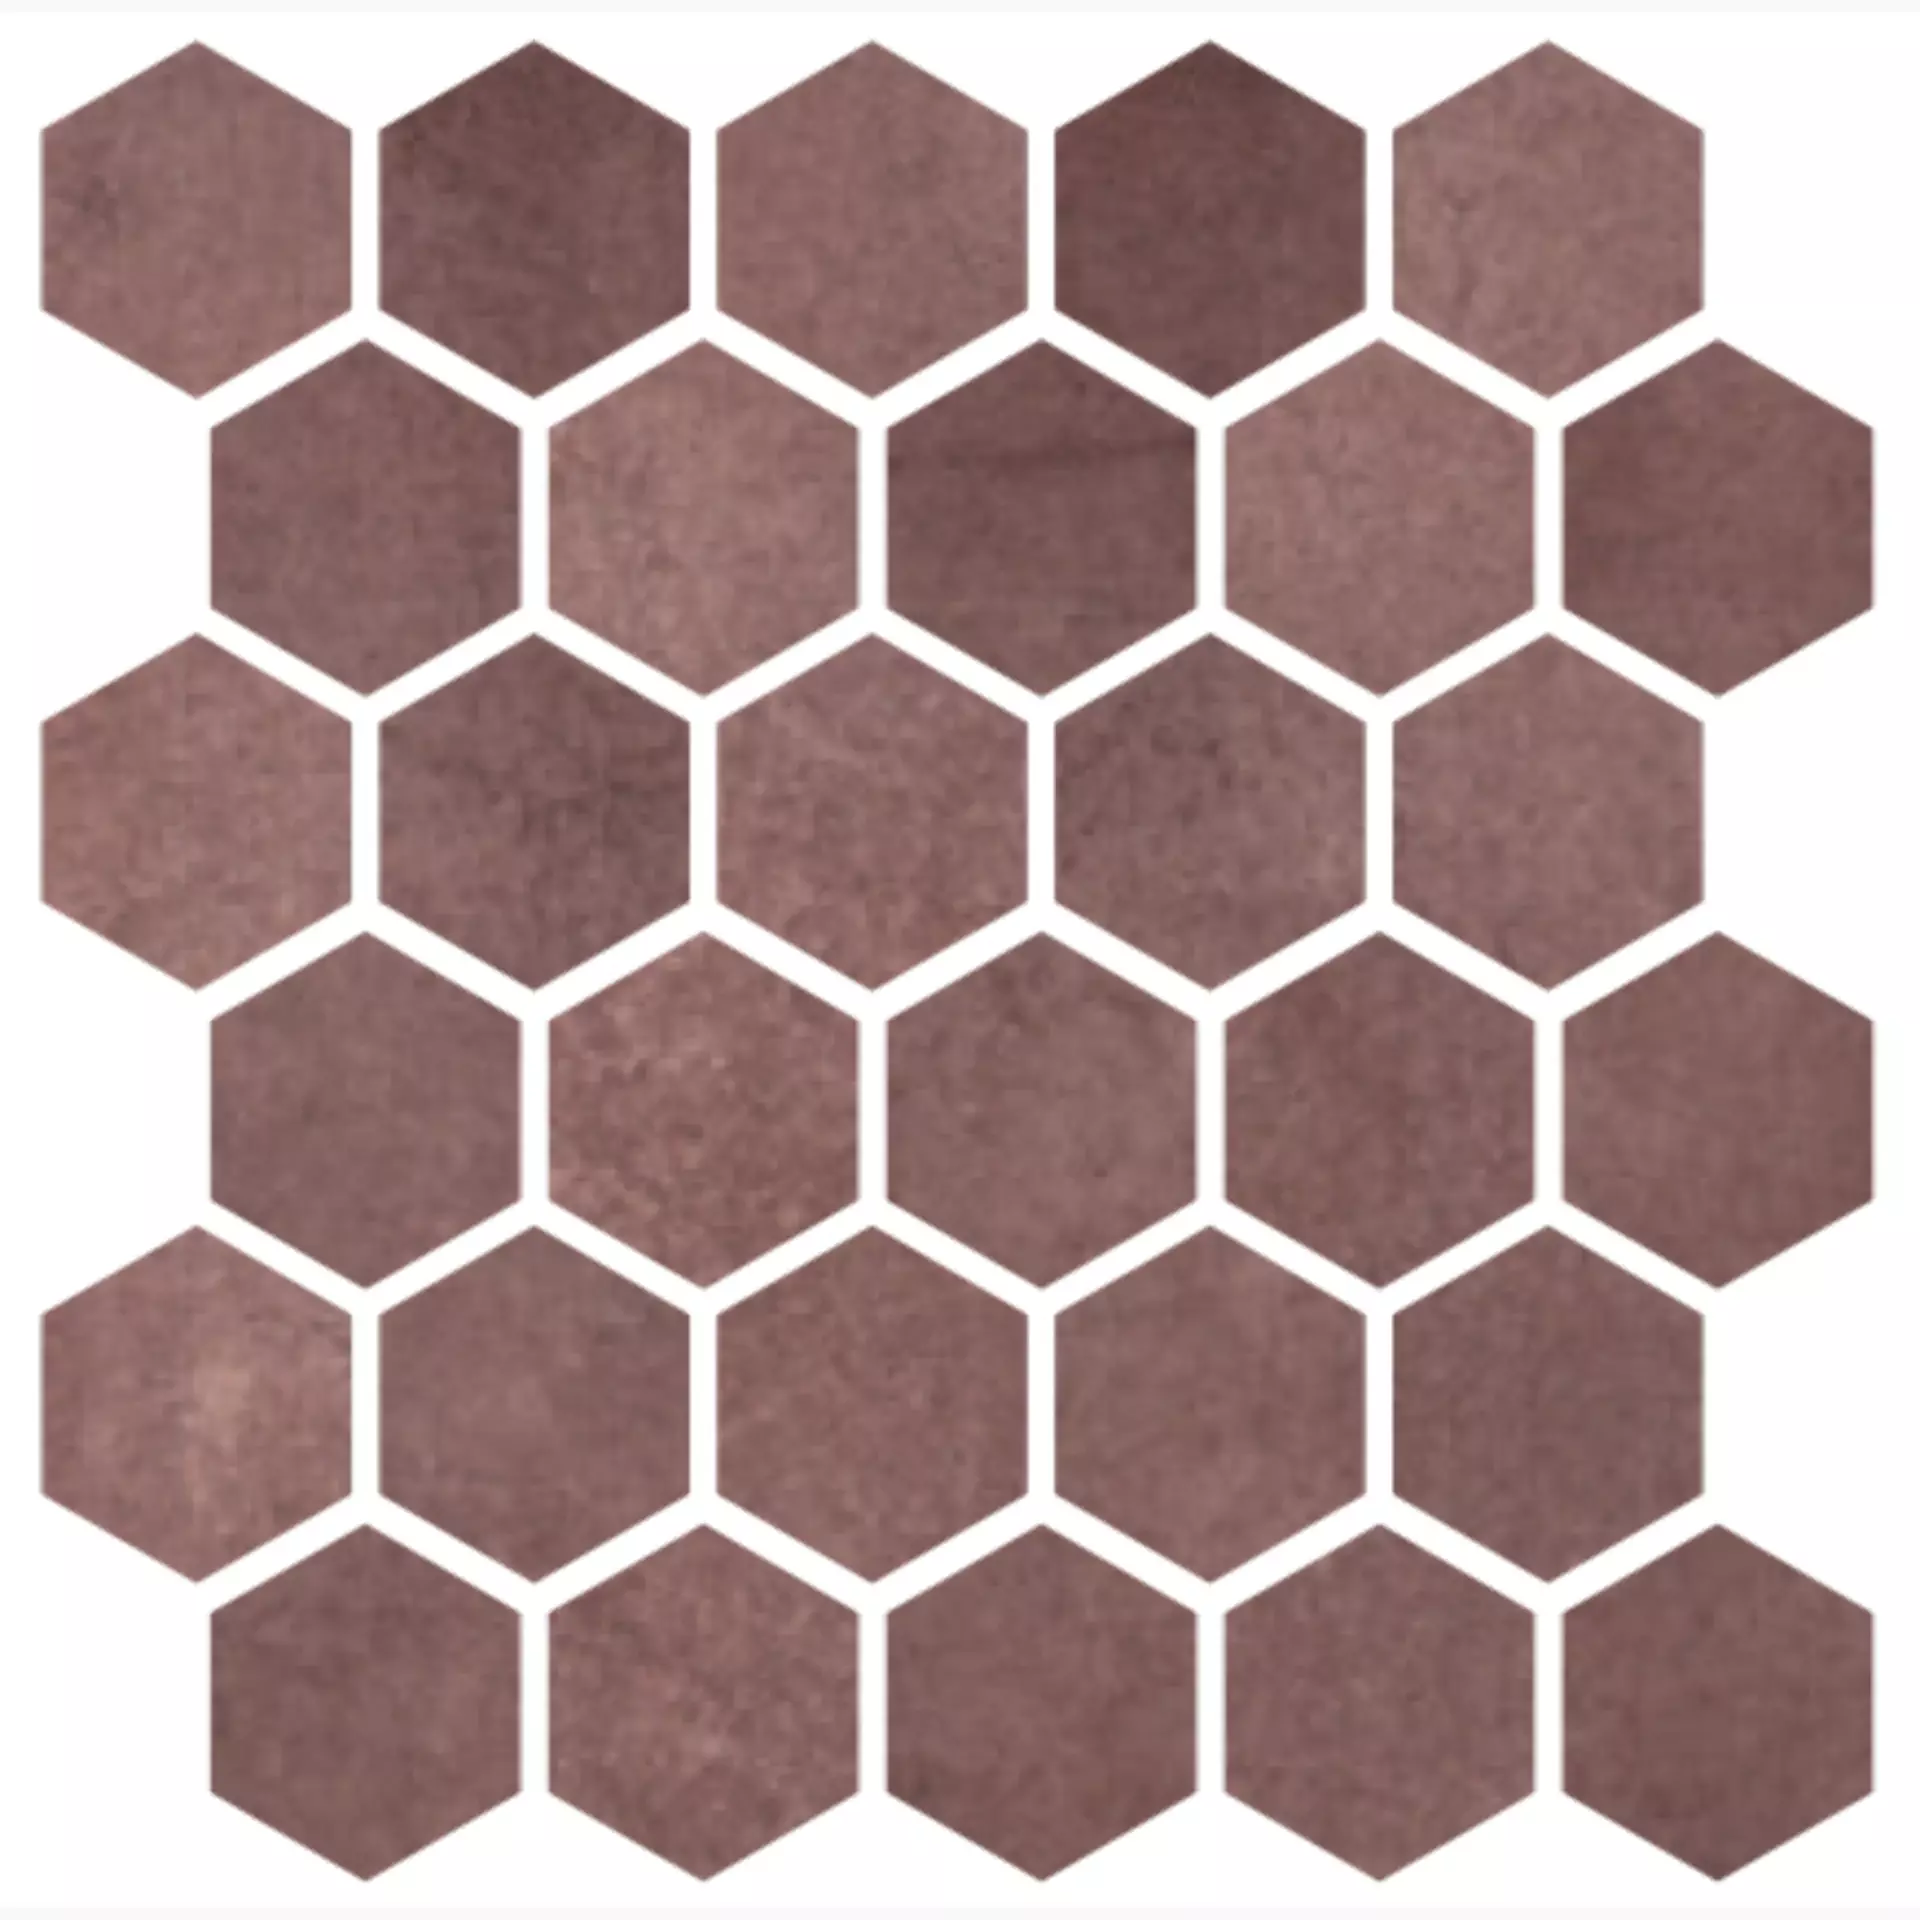 CIR Materia Prima Jewel Naturale Mosaik Hexagon 1069913 27x27cm